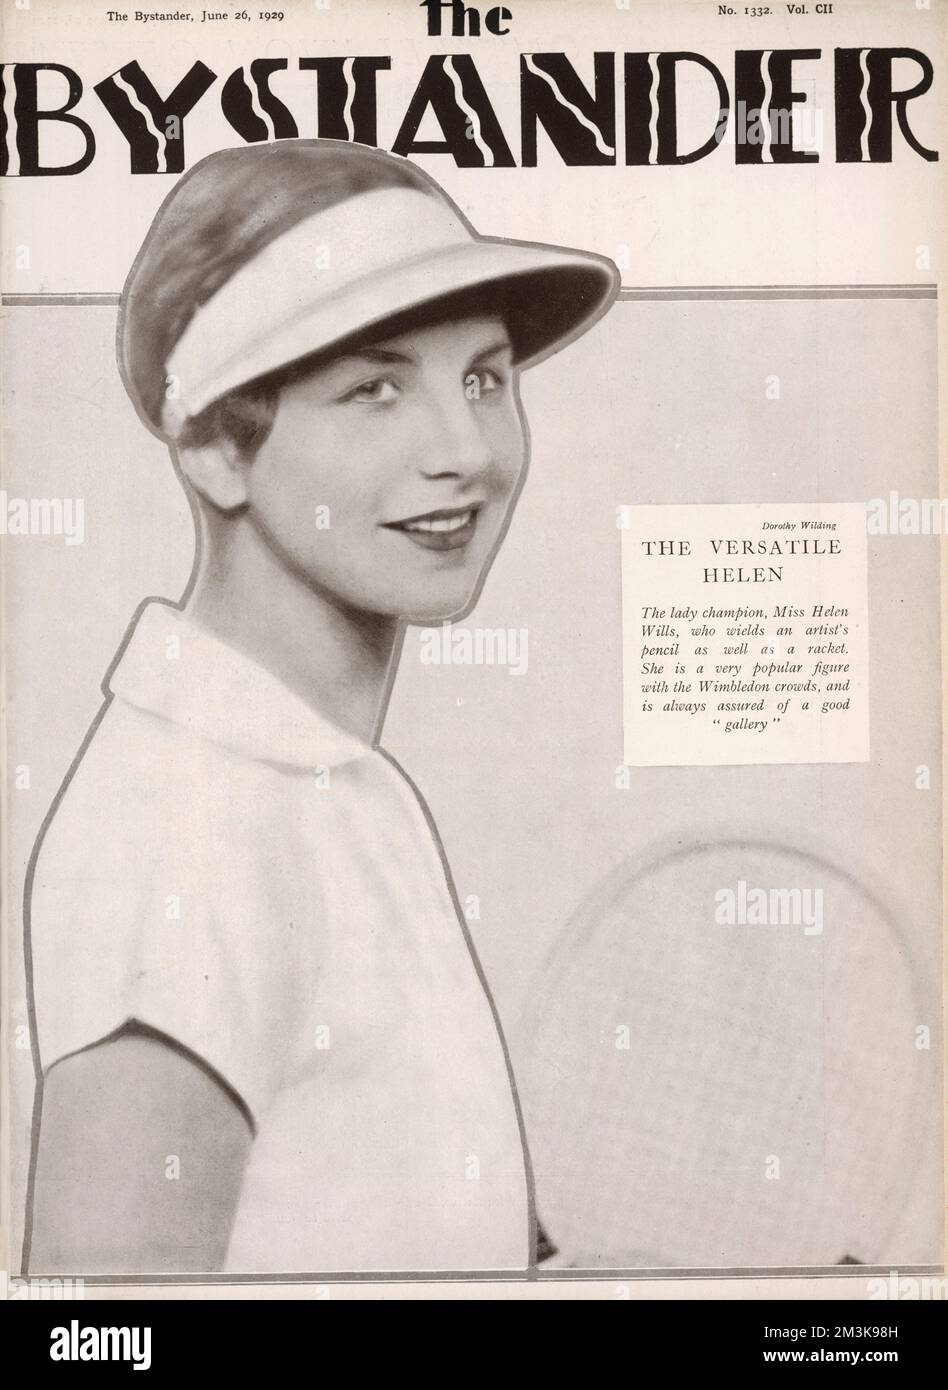 HELEN A GAGNÉ MOODY joueur de tennis américain et huit fois vainqueur de Wimbledon. Surnommé Little Miss Poker face mais un grand favori avec le spectateur! Date: 1905 - 1998 Banque D'Images